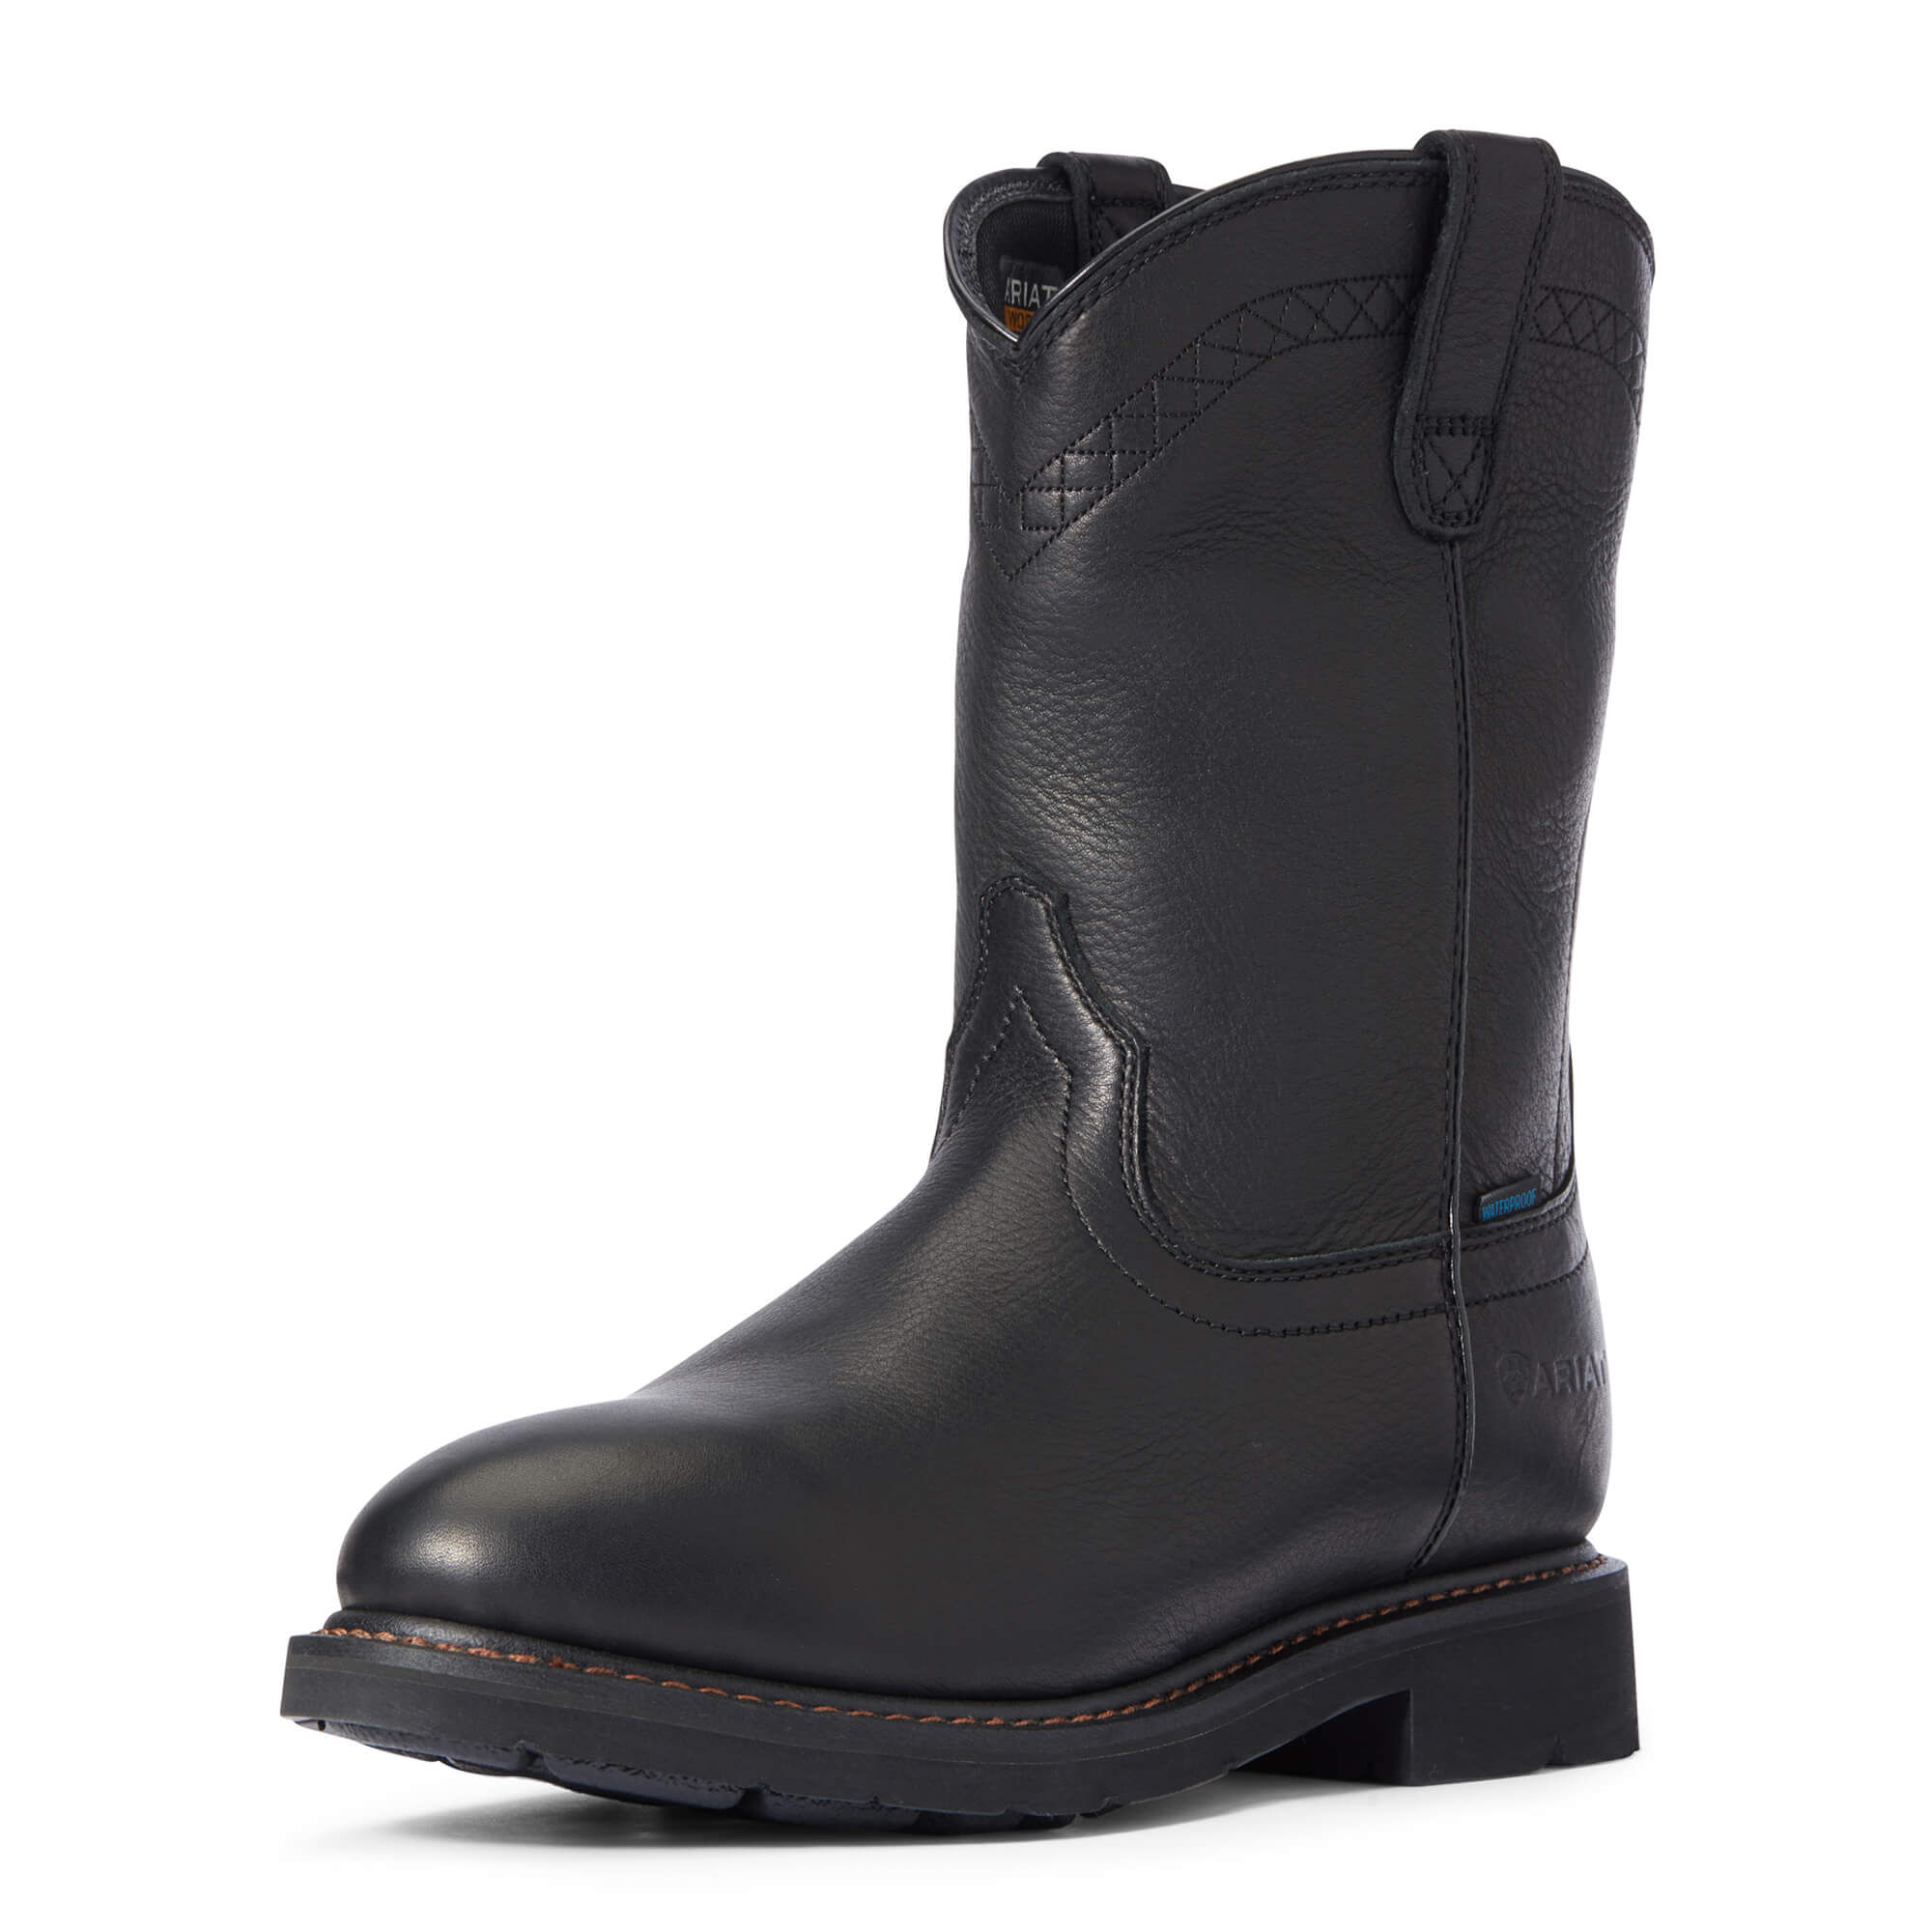 Waterproof Work Boots for Men 